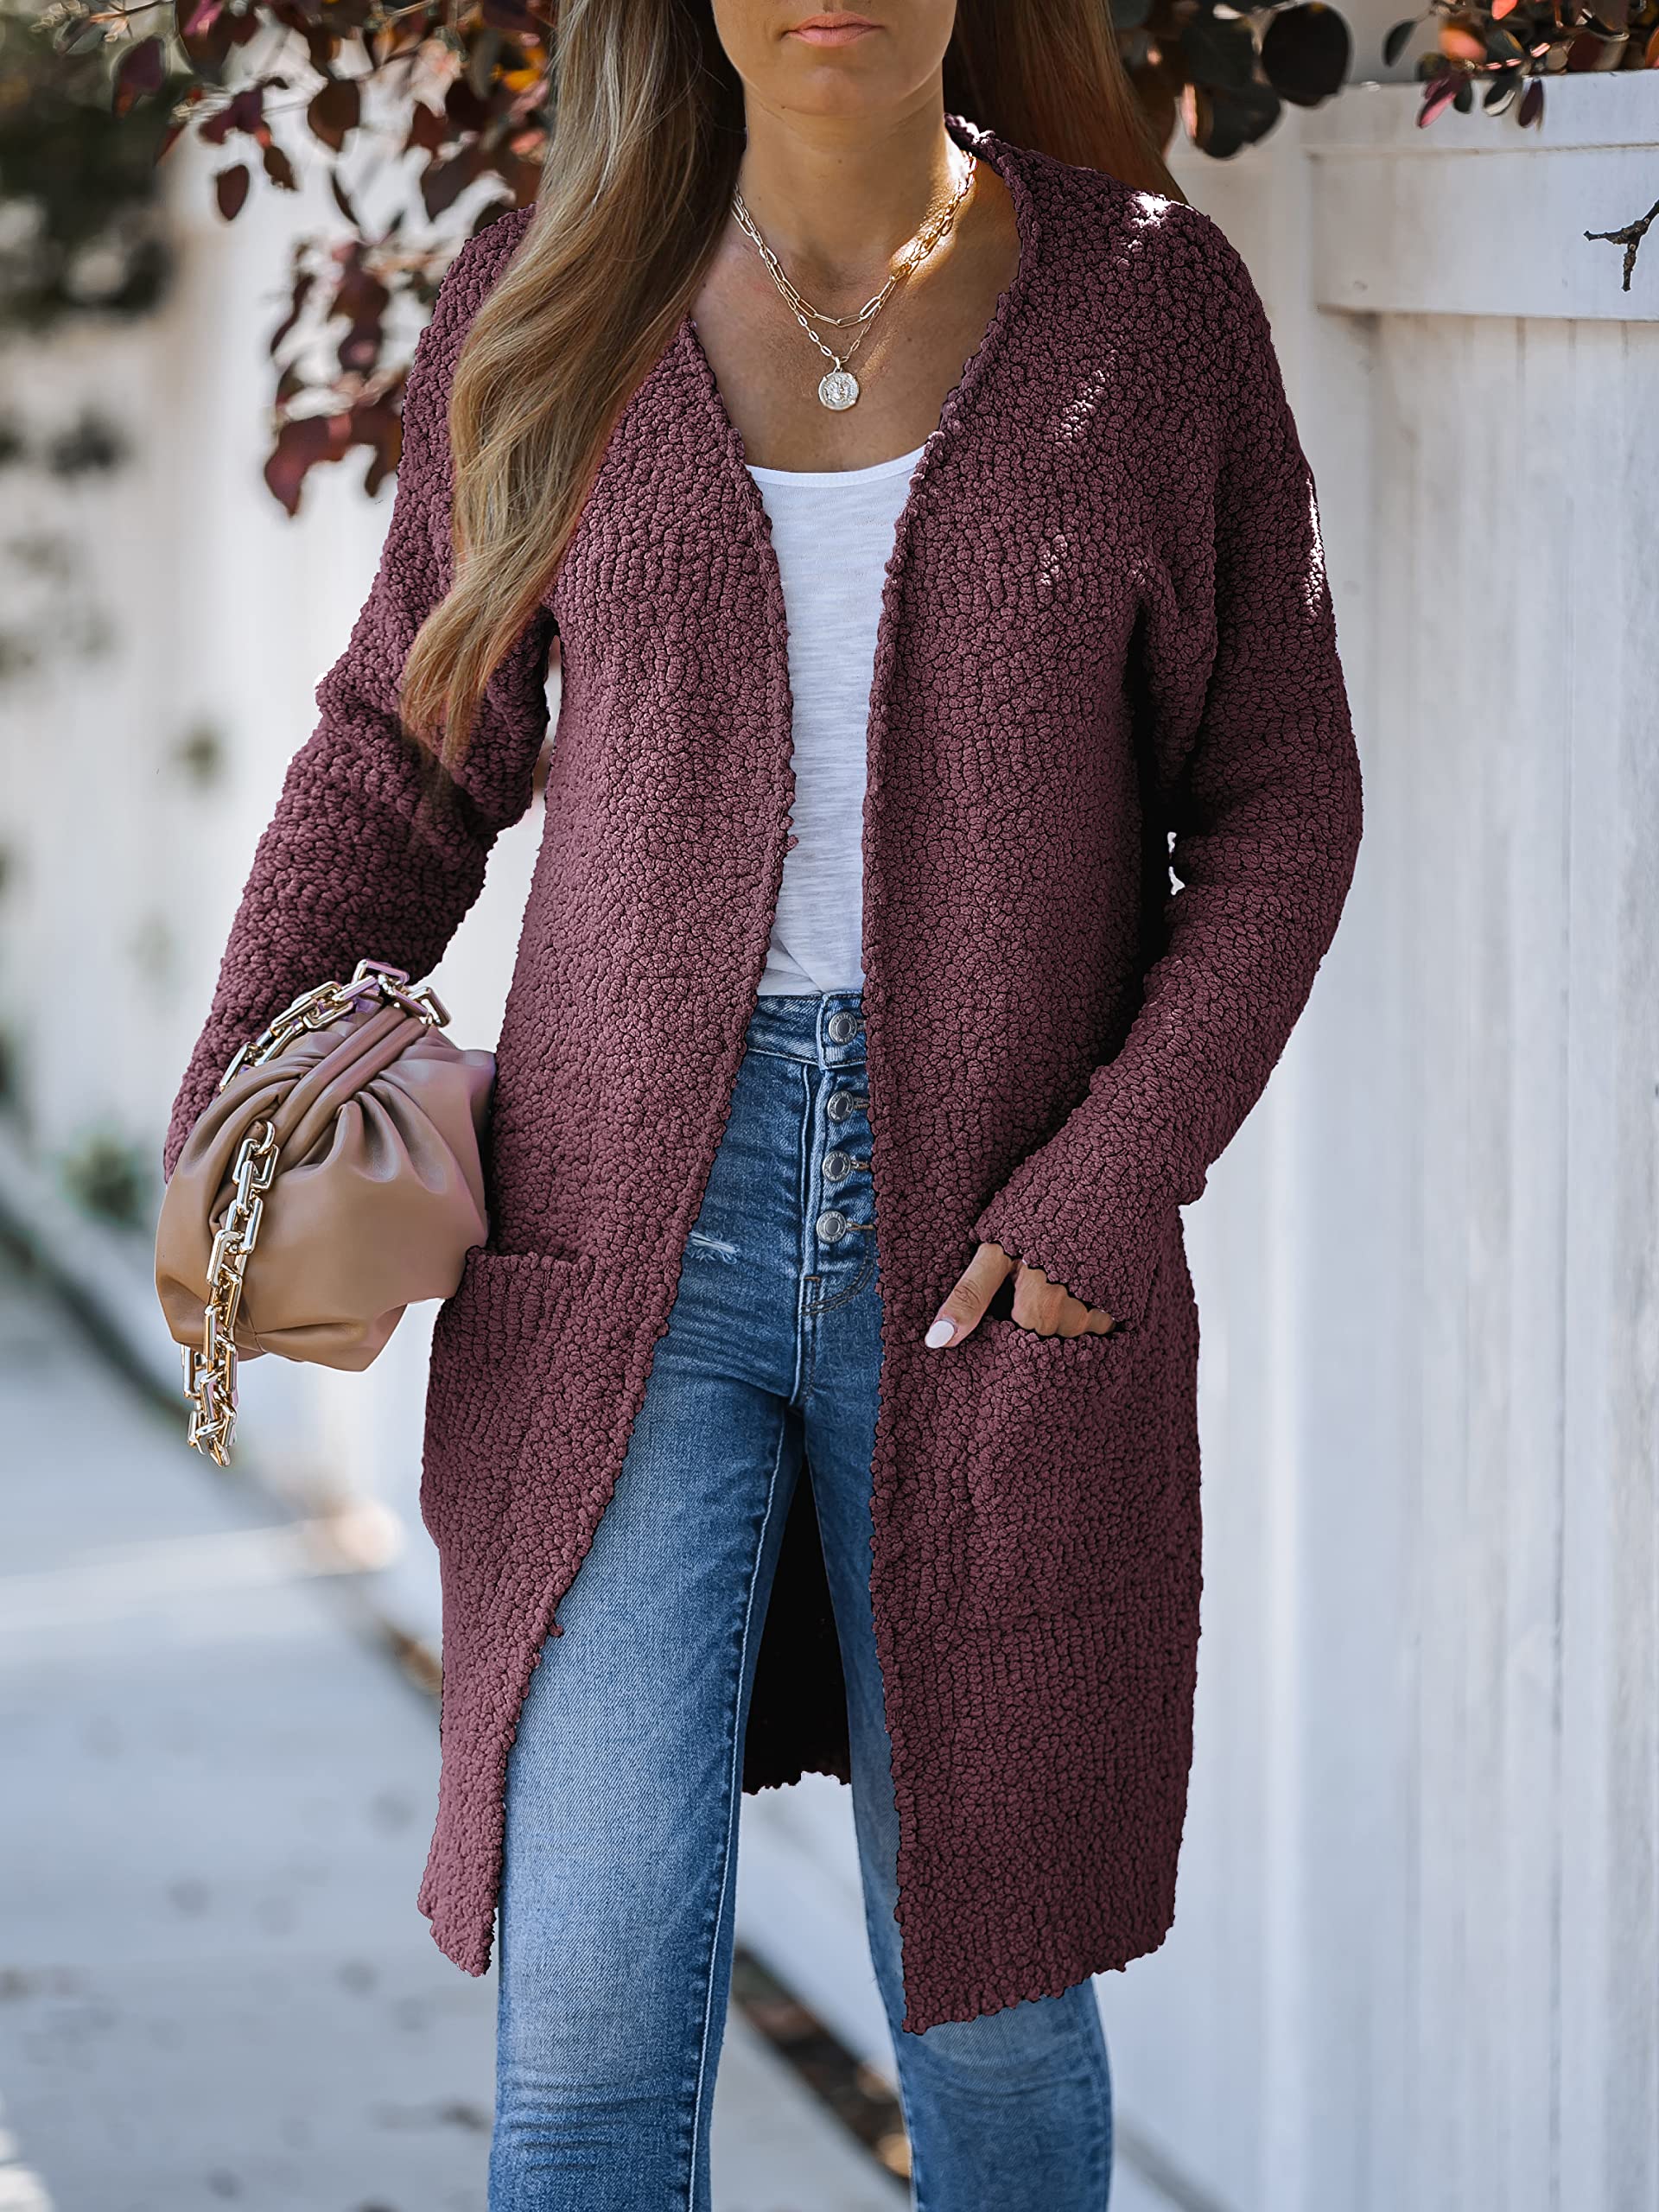 MEROKEETY Women's Long Sleeve Soft Chunky Knit Sweater Open Front Cardigans Outwear Coat